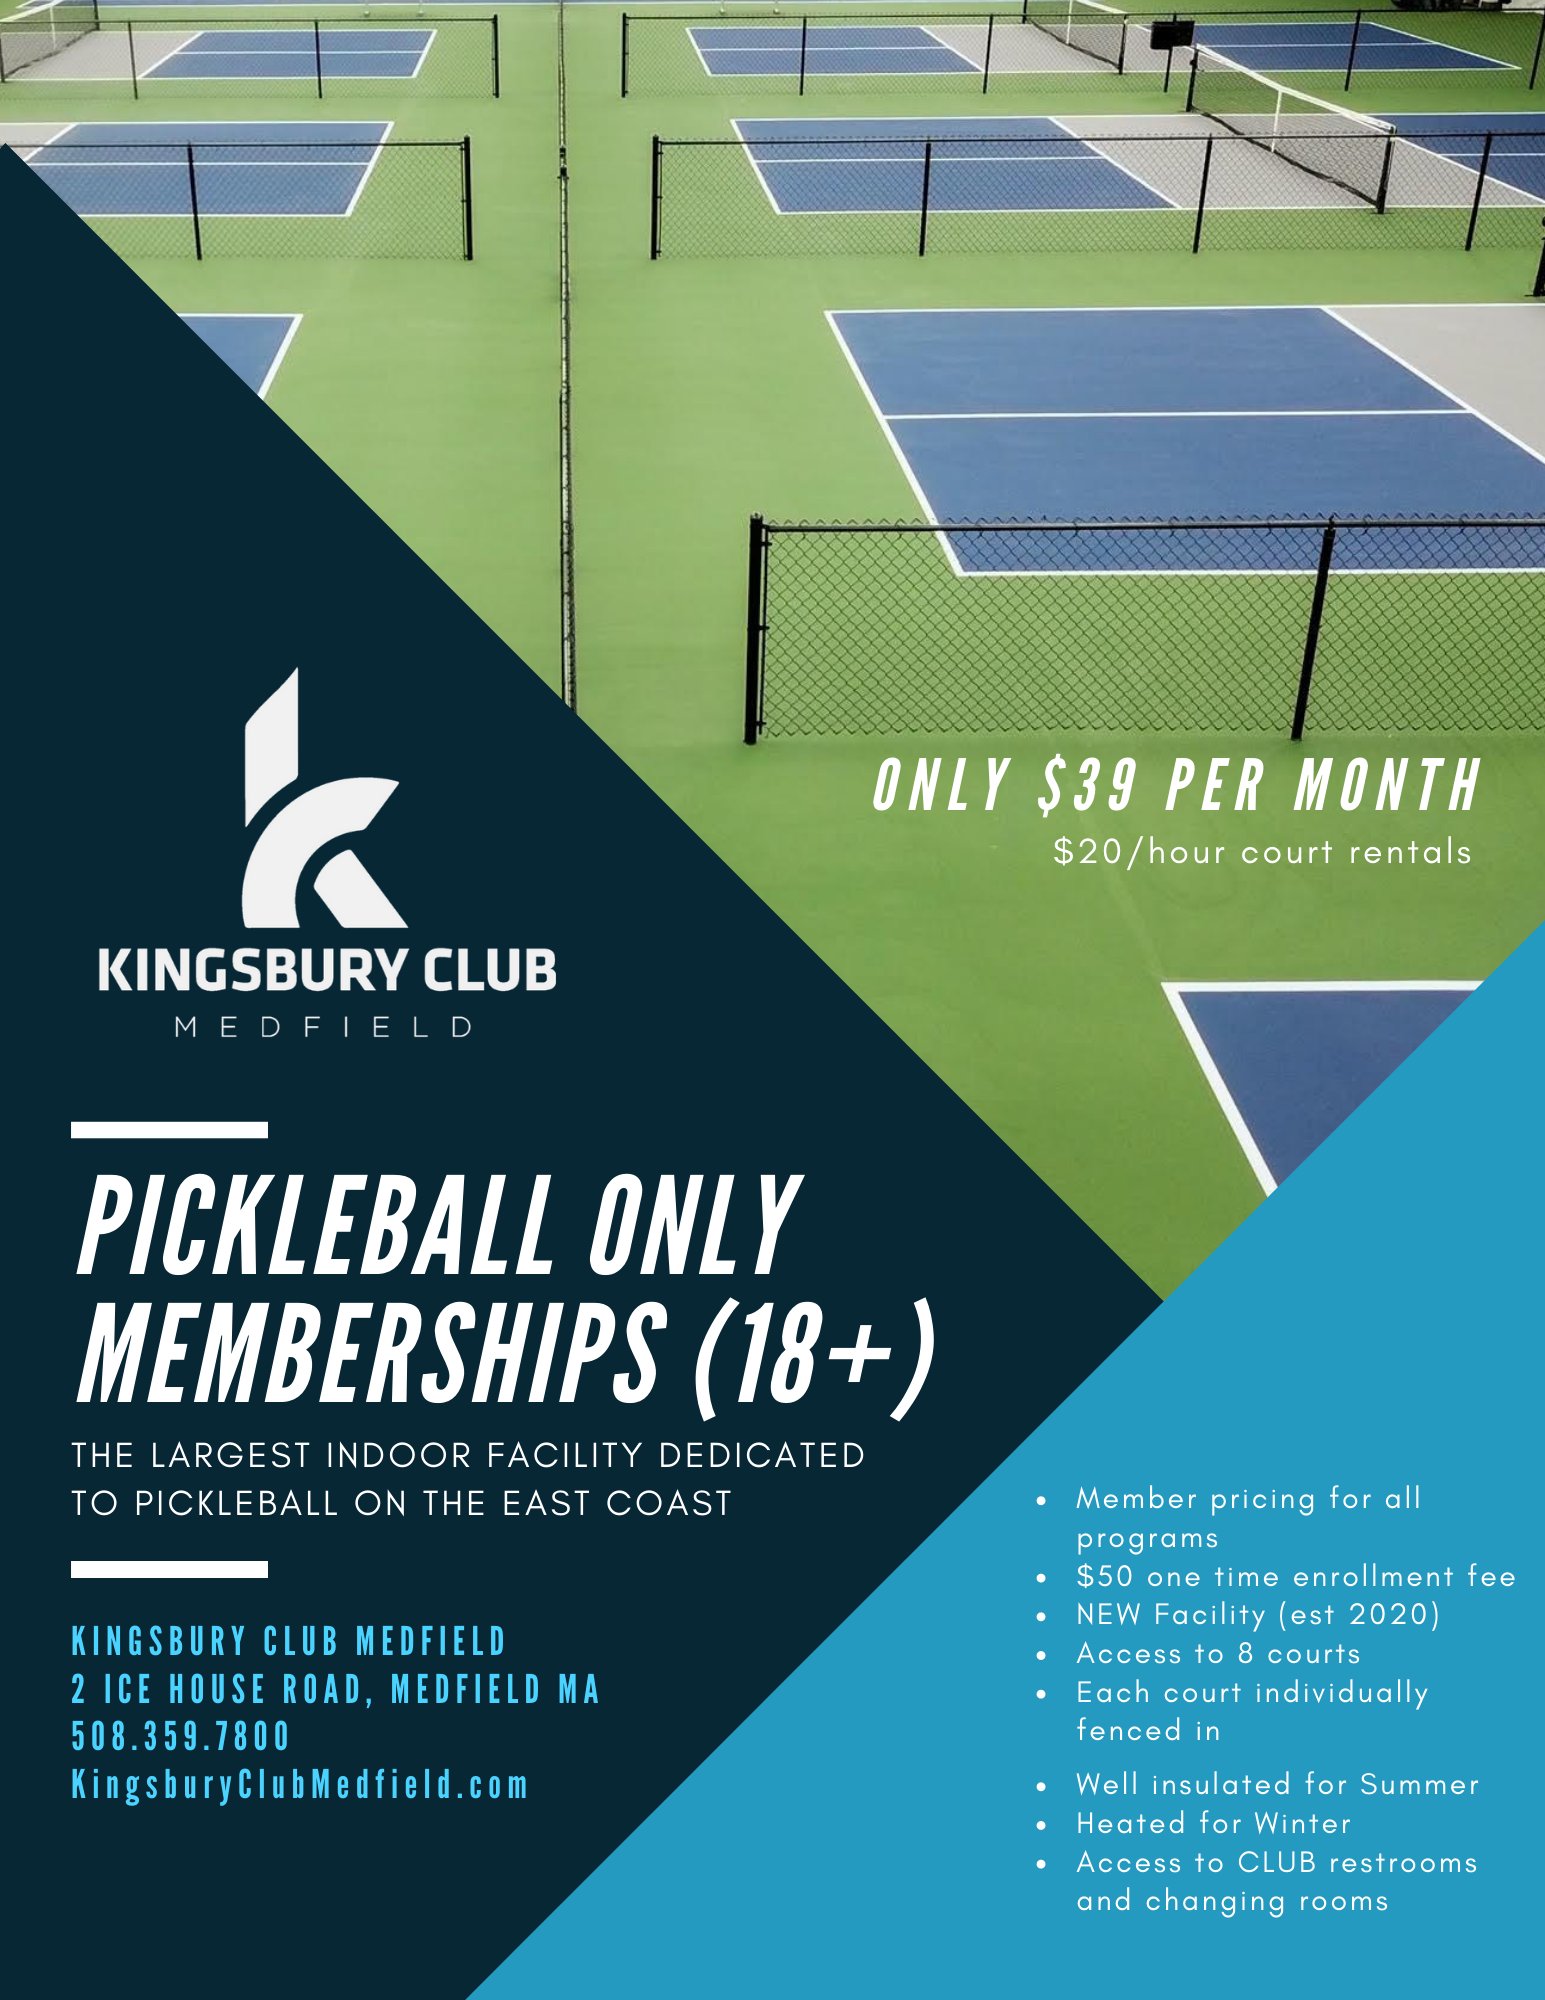 kingsbury club medfield membership rates